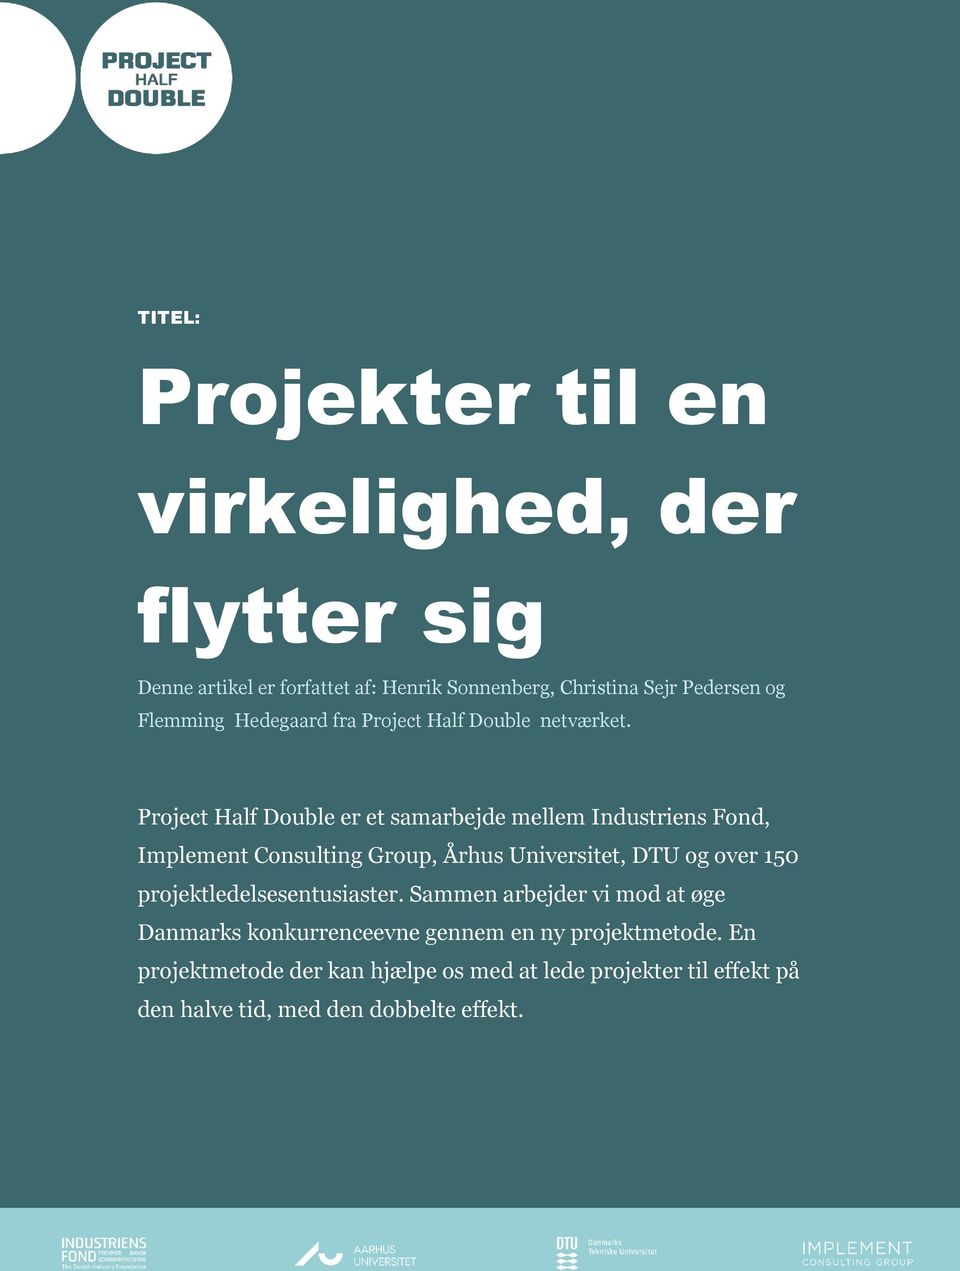 Project Half Double er et samarbejde mellem Industriens Fond, Implement Consulting Group, Århus Universitet, DTU og over 150